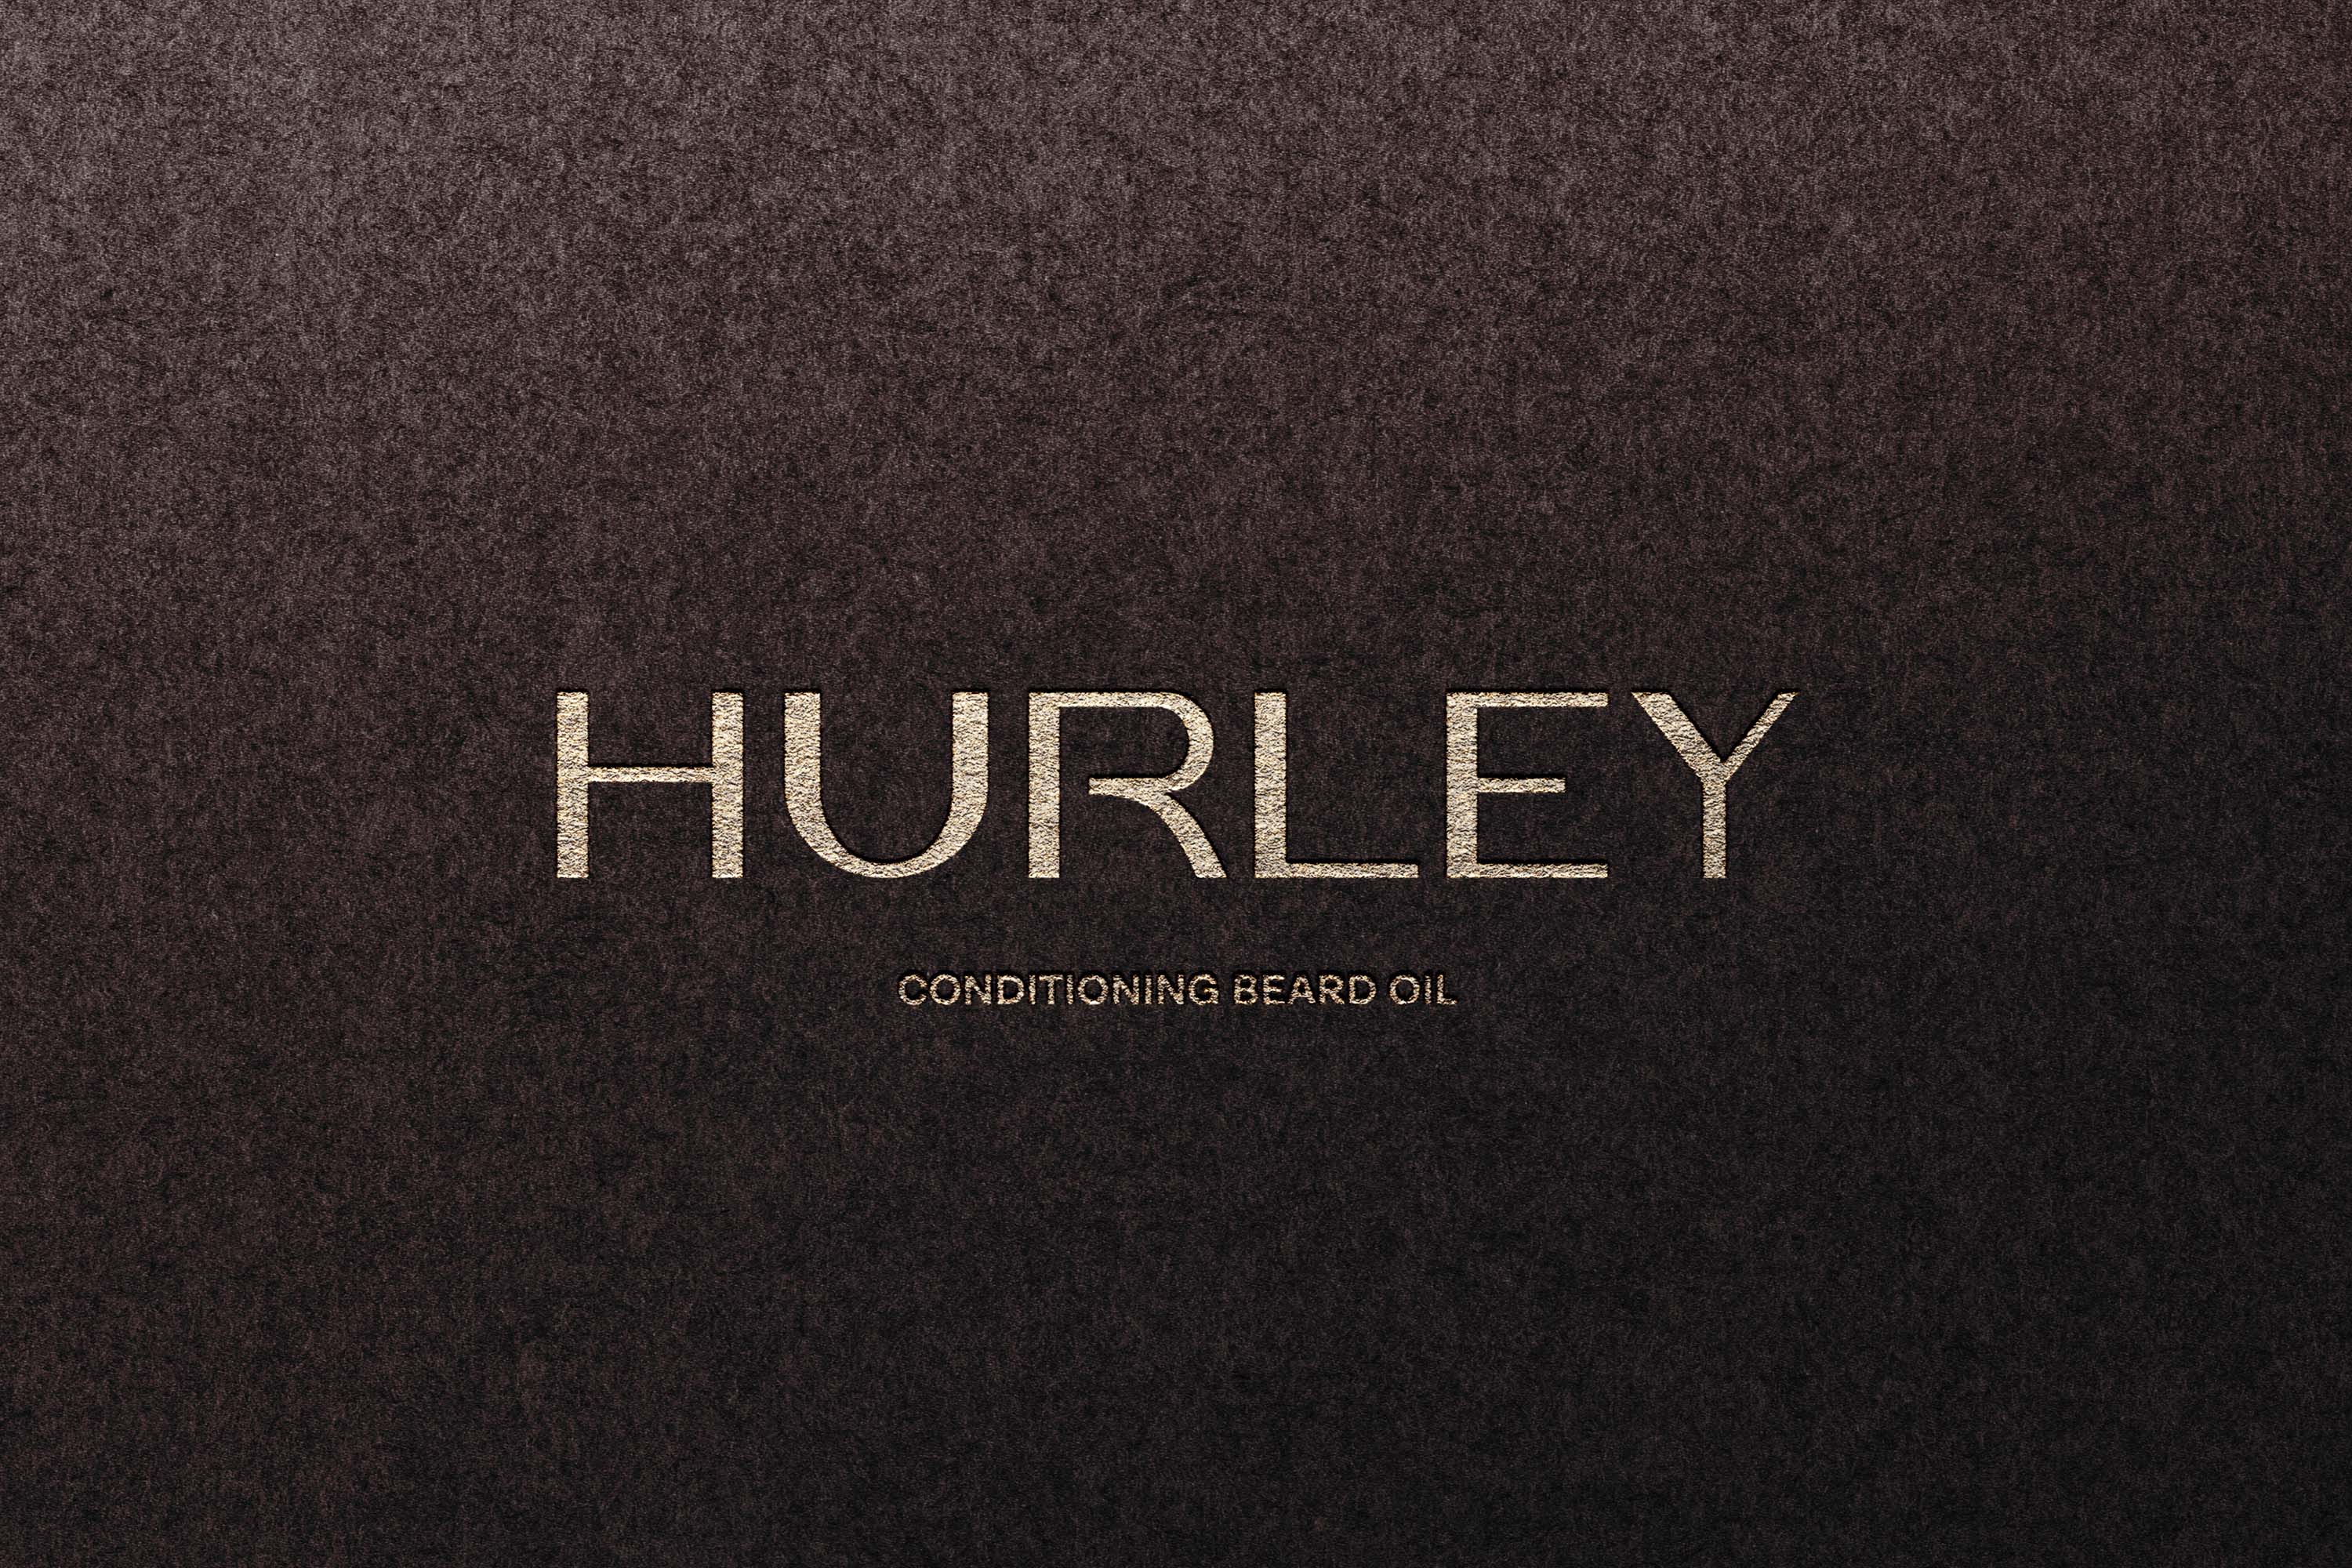 https://worldbranddesign.com/wp-content/uploads/2020/12/06-Hurley-_-WBDS.jpg